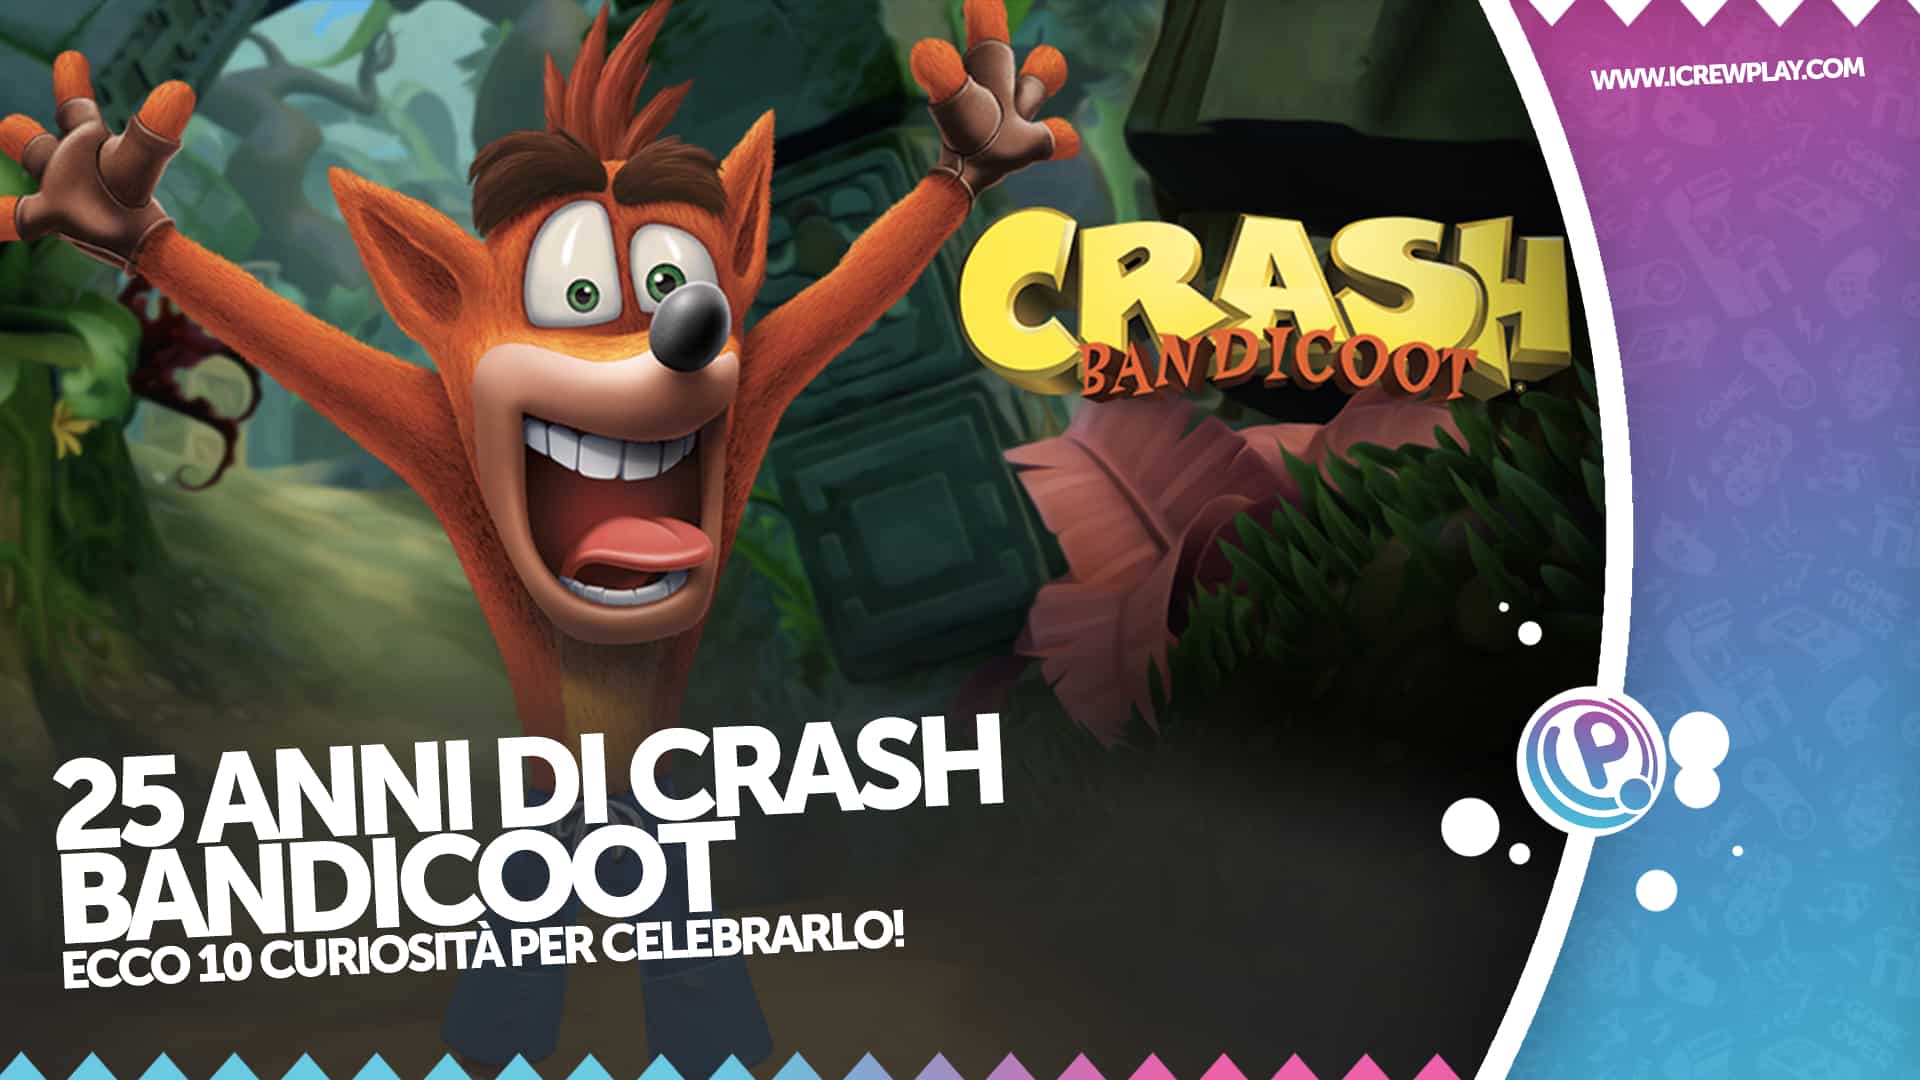 25 anni di Crash Bandicoot: celebriamolo con 10 curiosità! 2